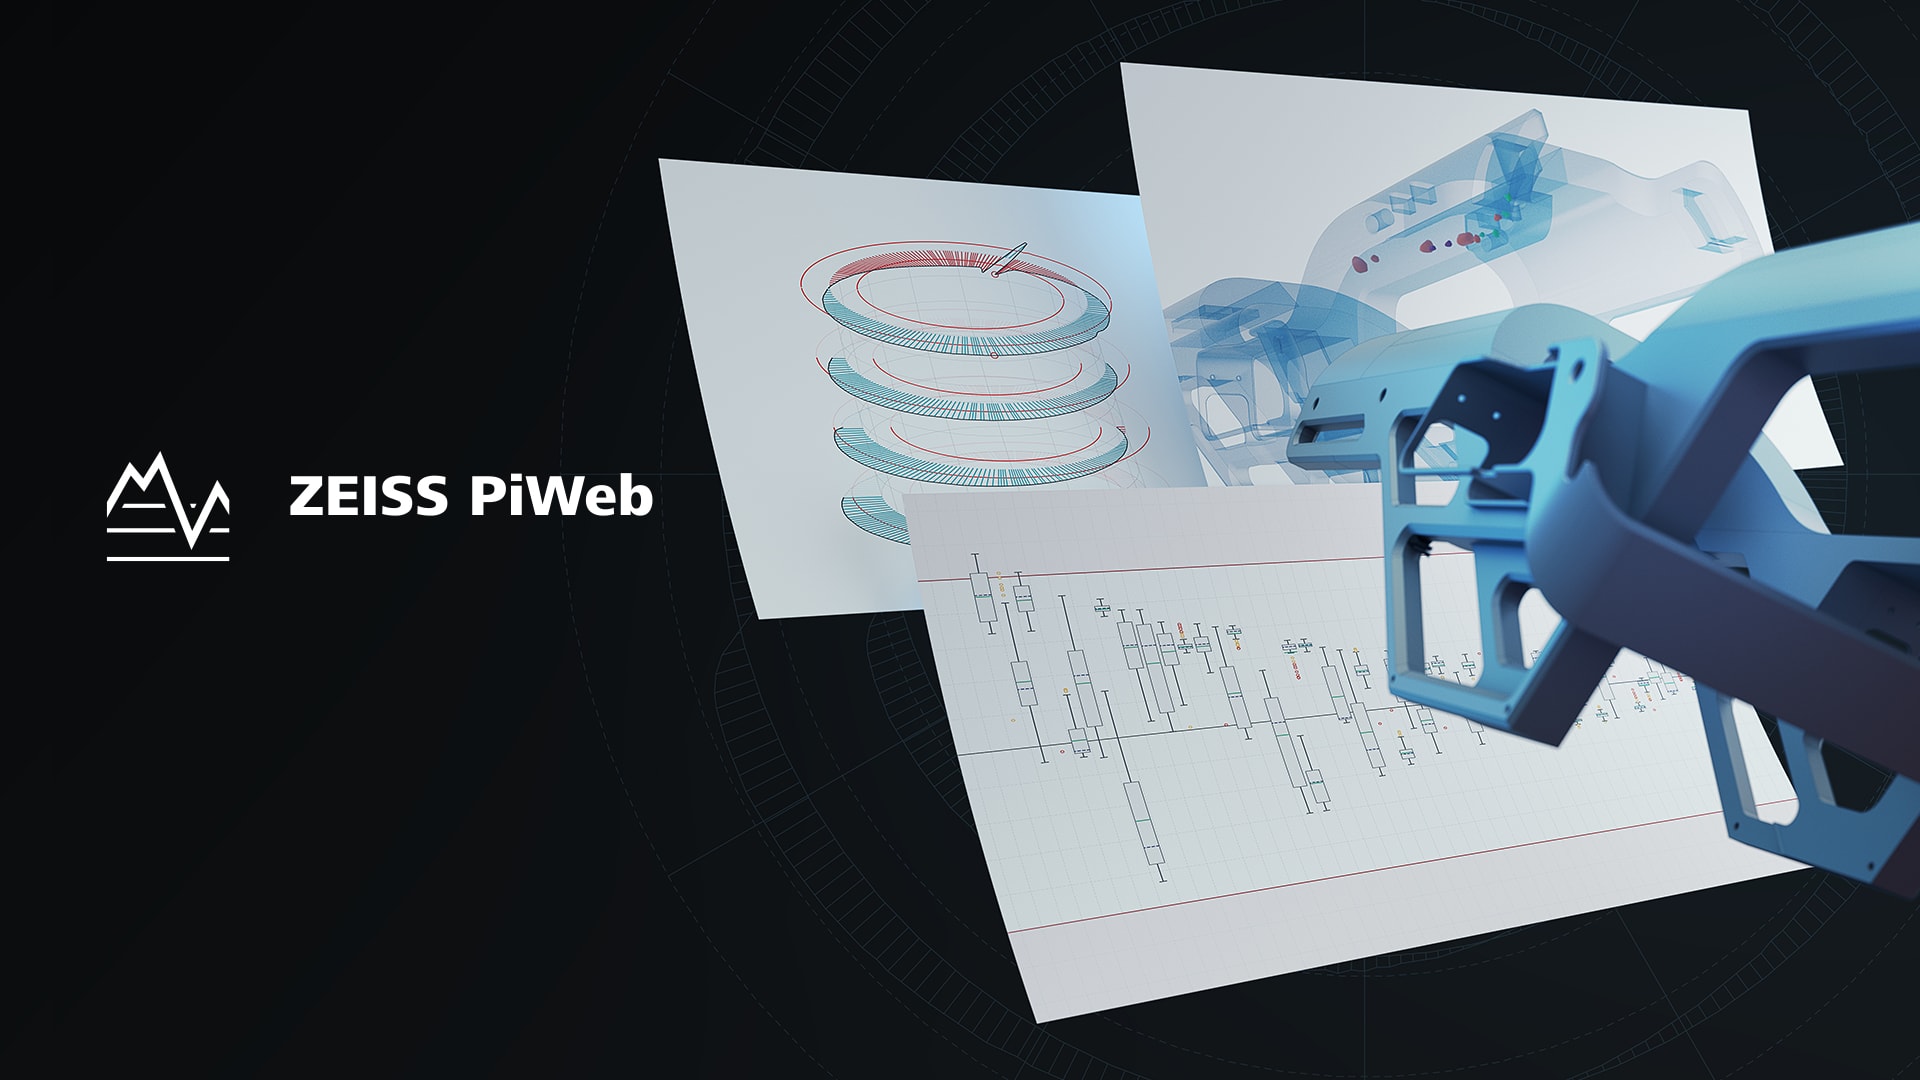 ZEISS PiWebによって生成された測定データのプリントアウト